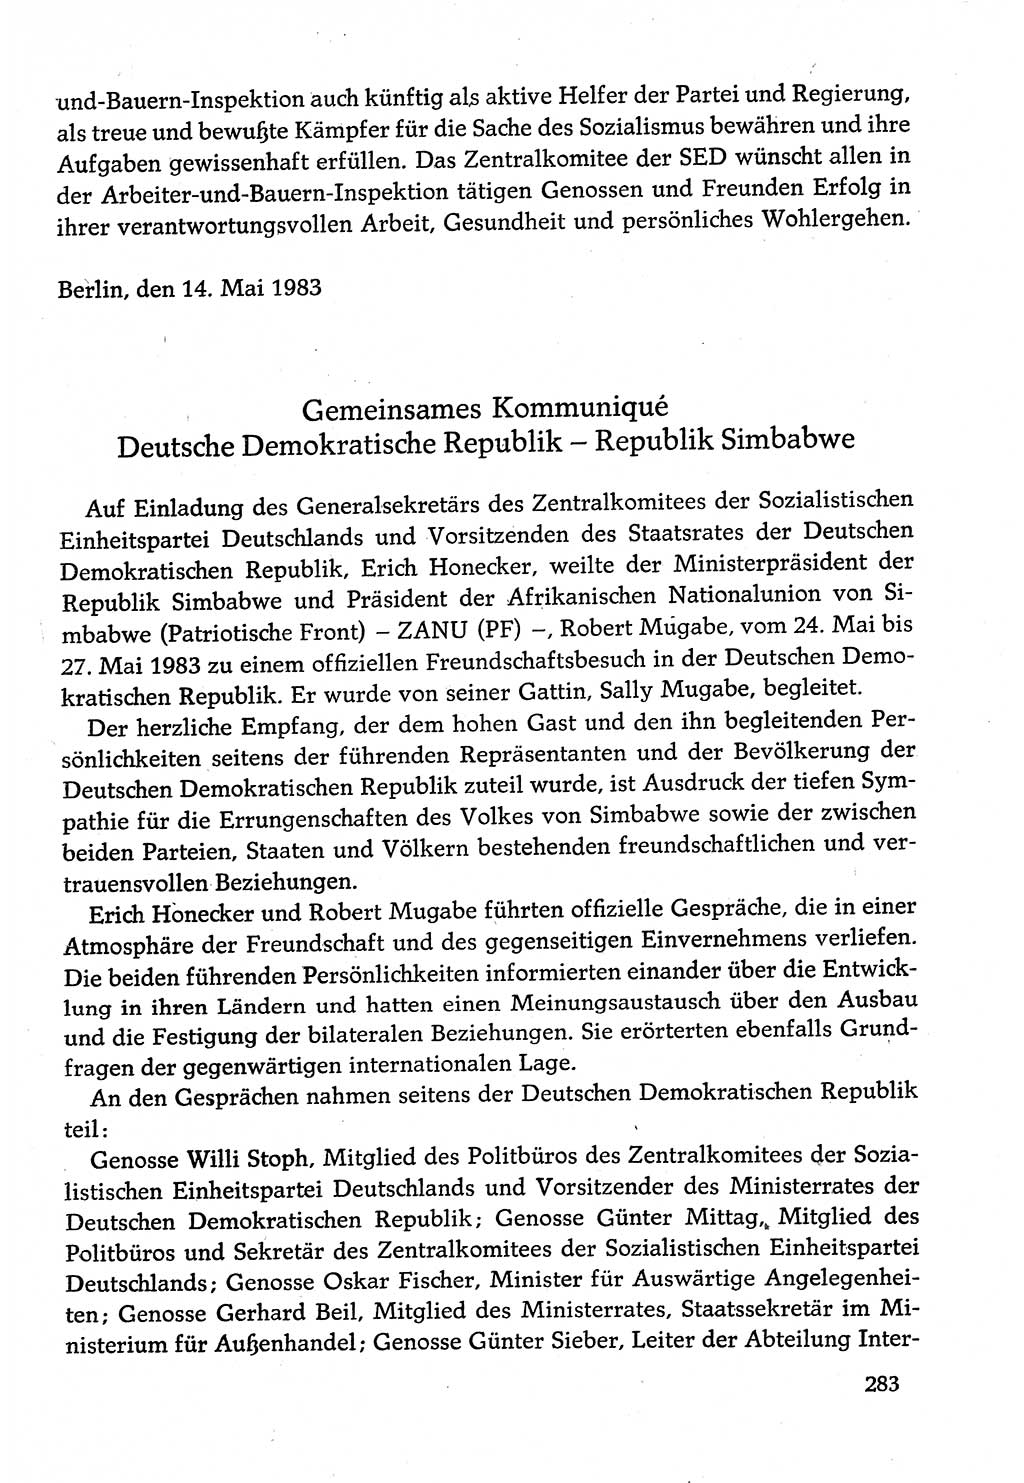 Dokumente der Sozialistischen Einheitspartei Deutschlands (SED) [Deutsche Demokratische Republik (DDR)] 1982-1983, Seite 283 (Dok. SED DDR 1982-1983, S. 283)